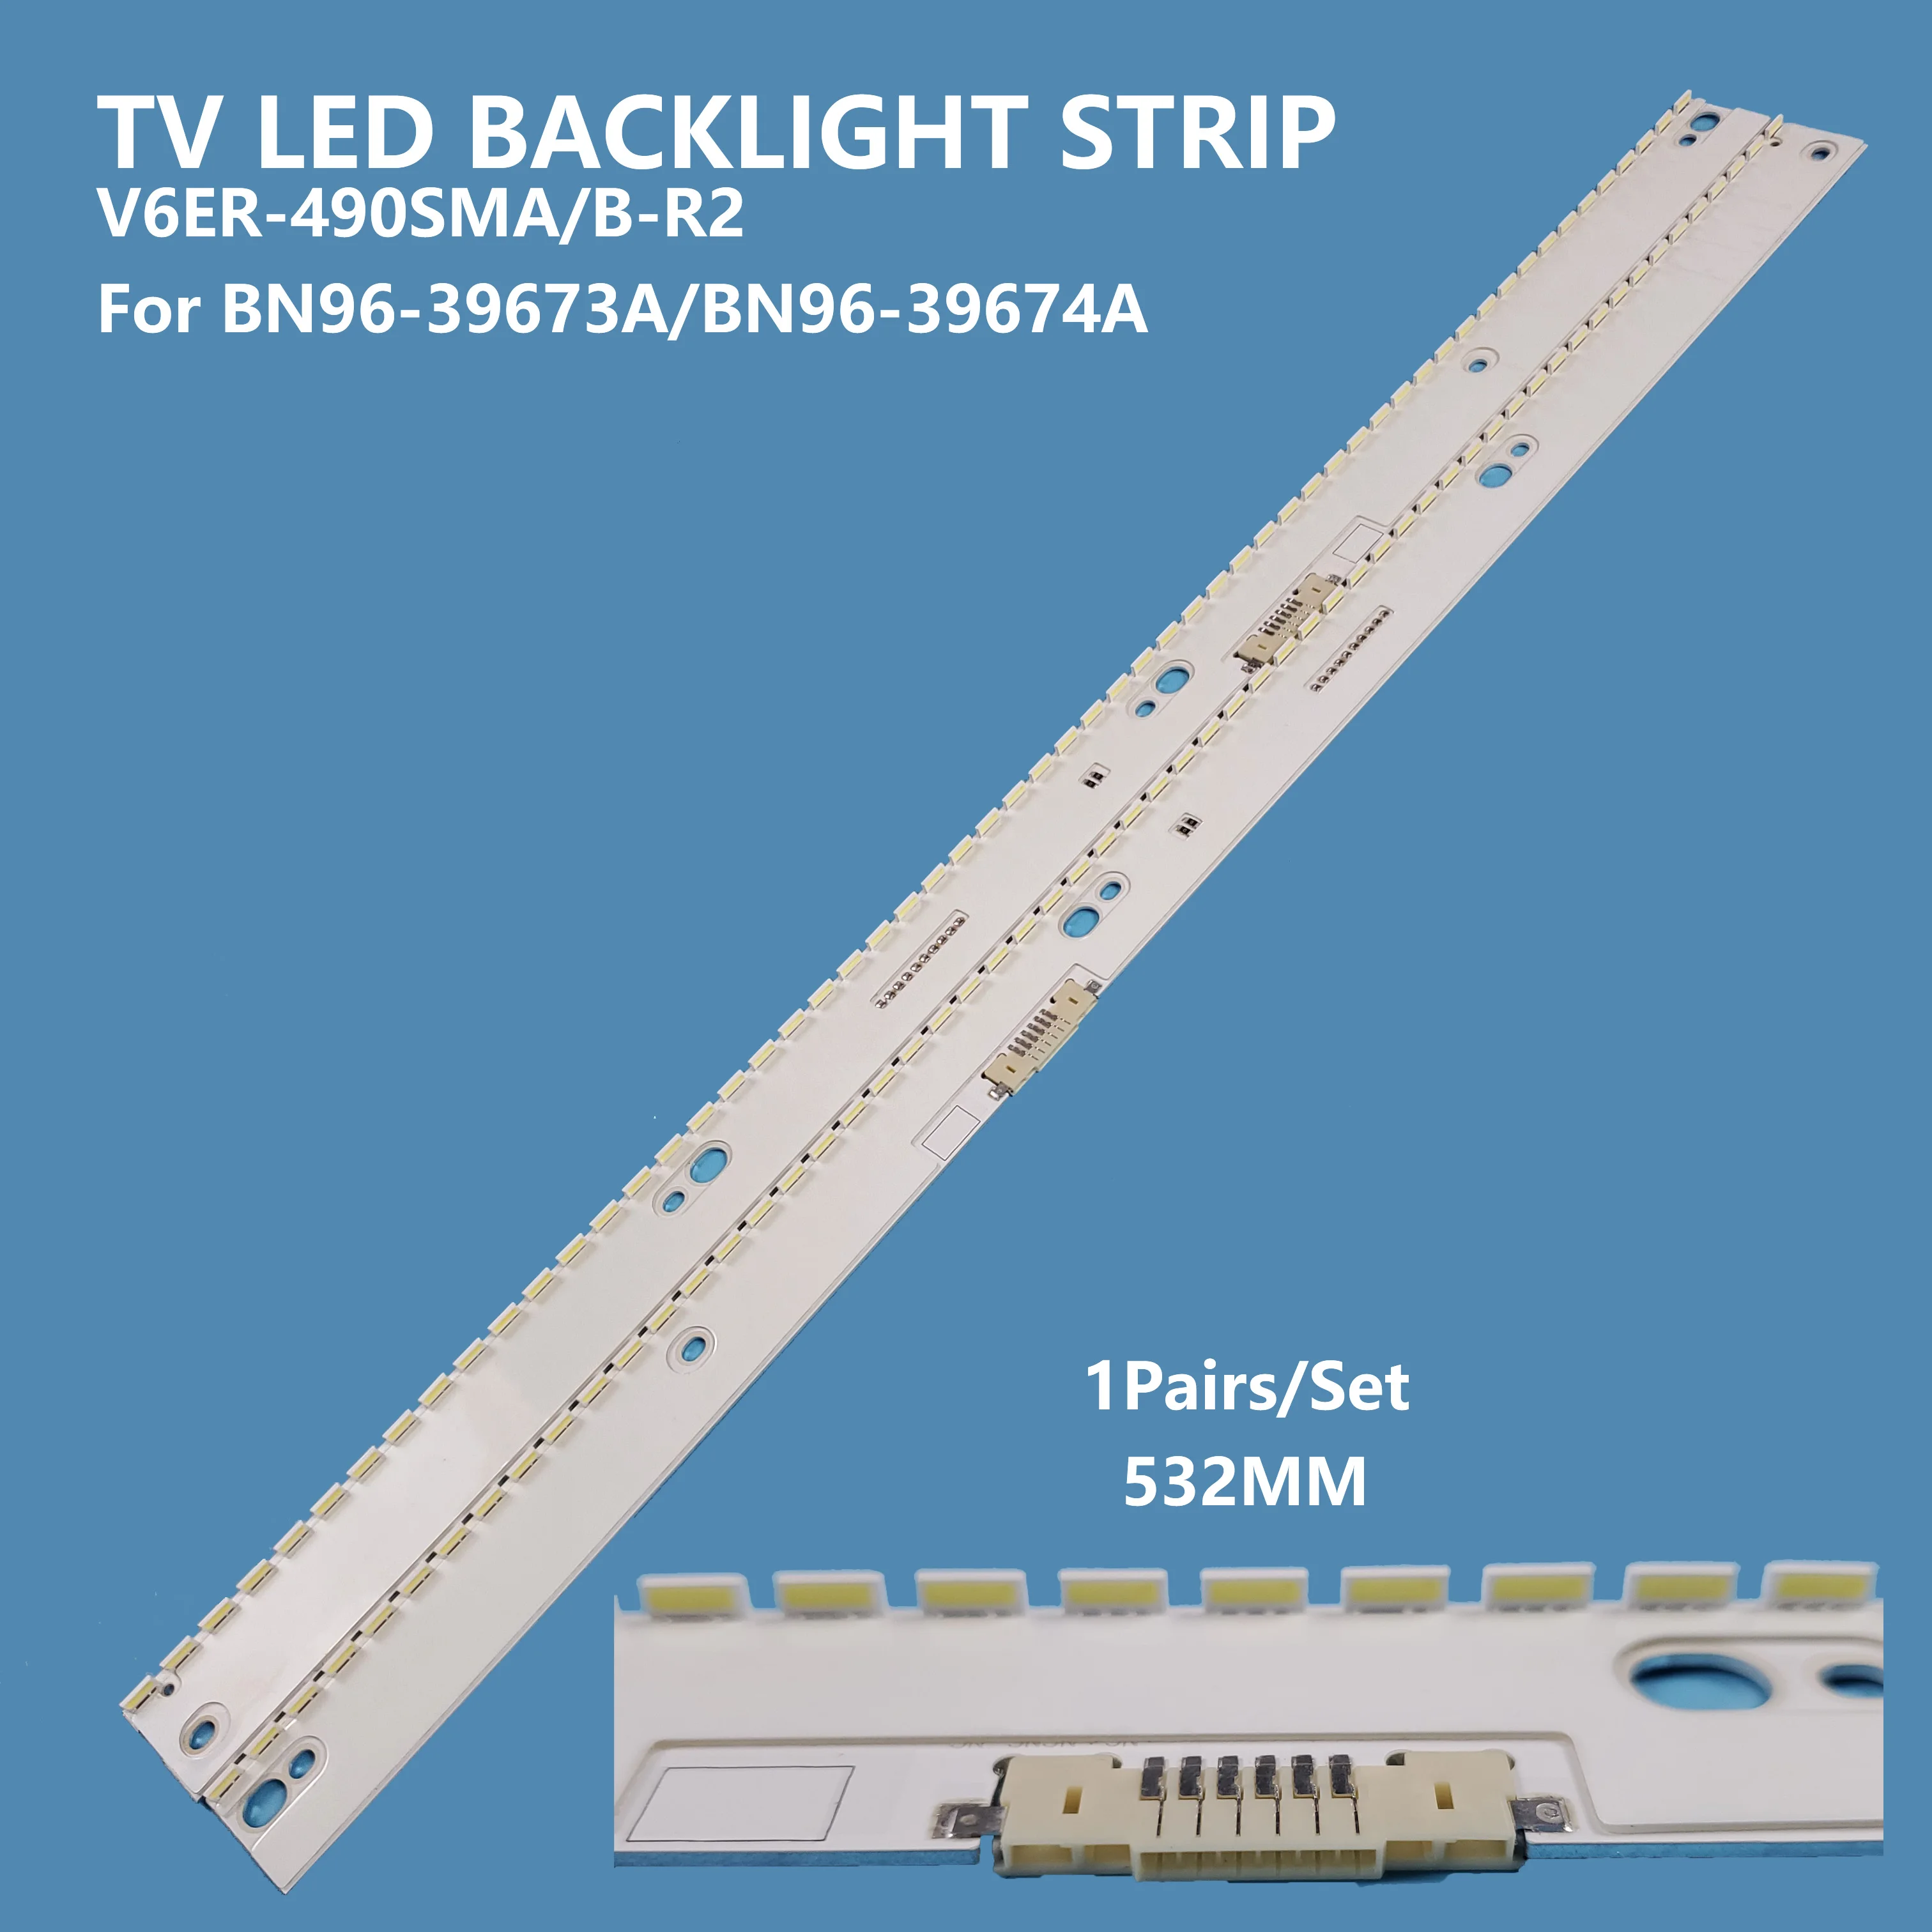 2Pcs/set LED Backlight Strip V6ER_490SMA/SMB_58LED_R2 BN96-39673A/39674A Bar Light for Samsung 49inch TV Accessories Repair